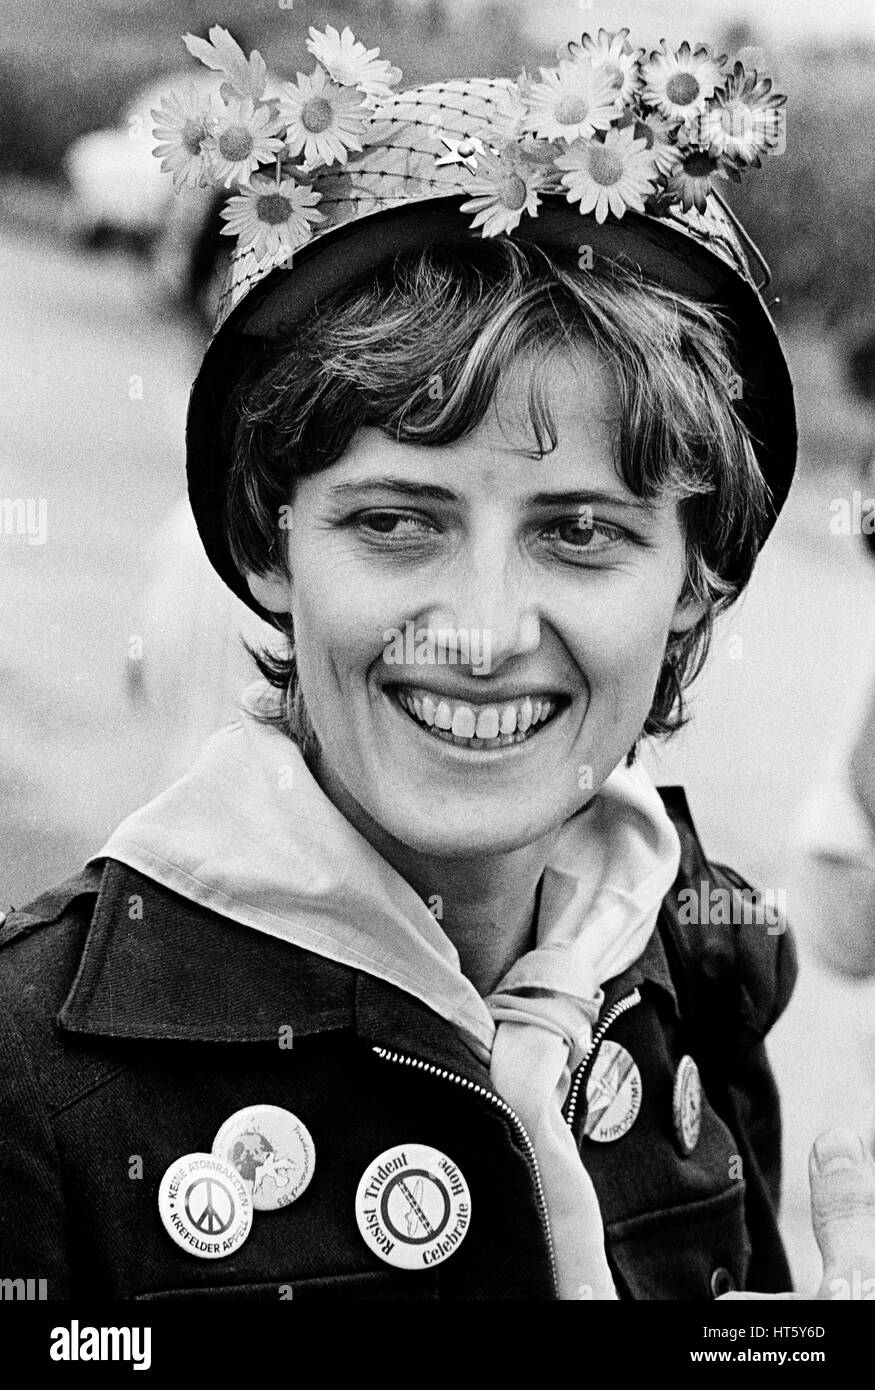 Mutlangen, Allemagne, 01.Sept.1983 : PETRA KELLY (* 29 novembre 1947, † probablement le 1er octobre 1992), co-fondateur du Parti Vert allemand 'Die Gruenen' avec un casque d'acier décorée sur une manifestation à la paix, l'Allemagne Mutlangen Banque D'Images